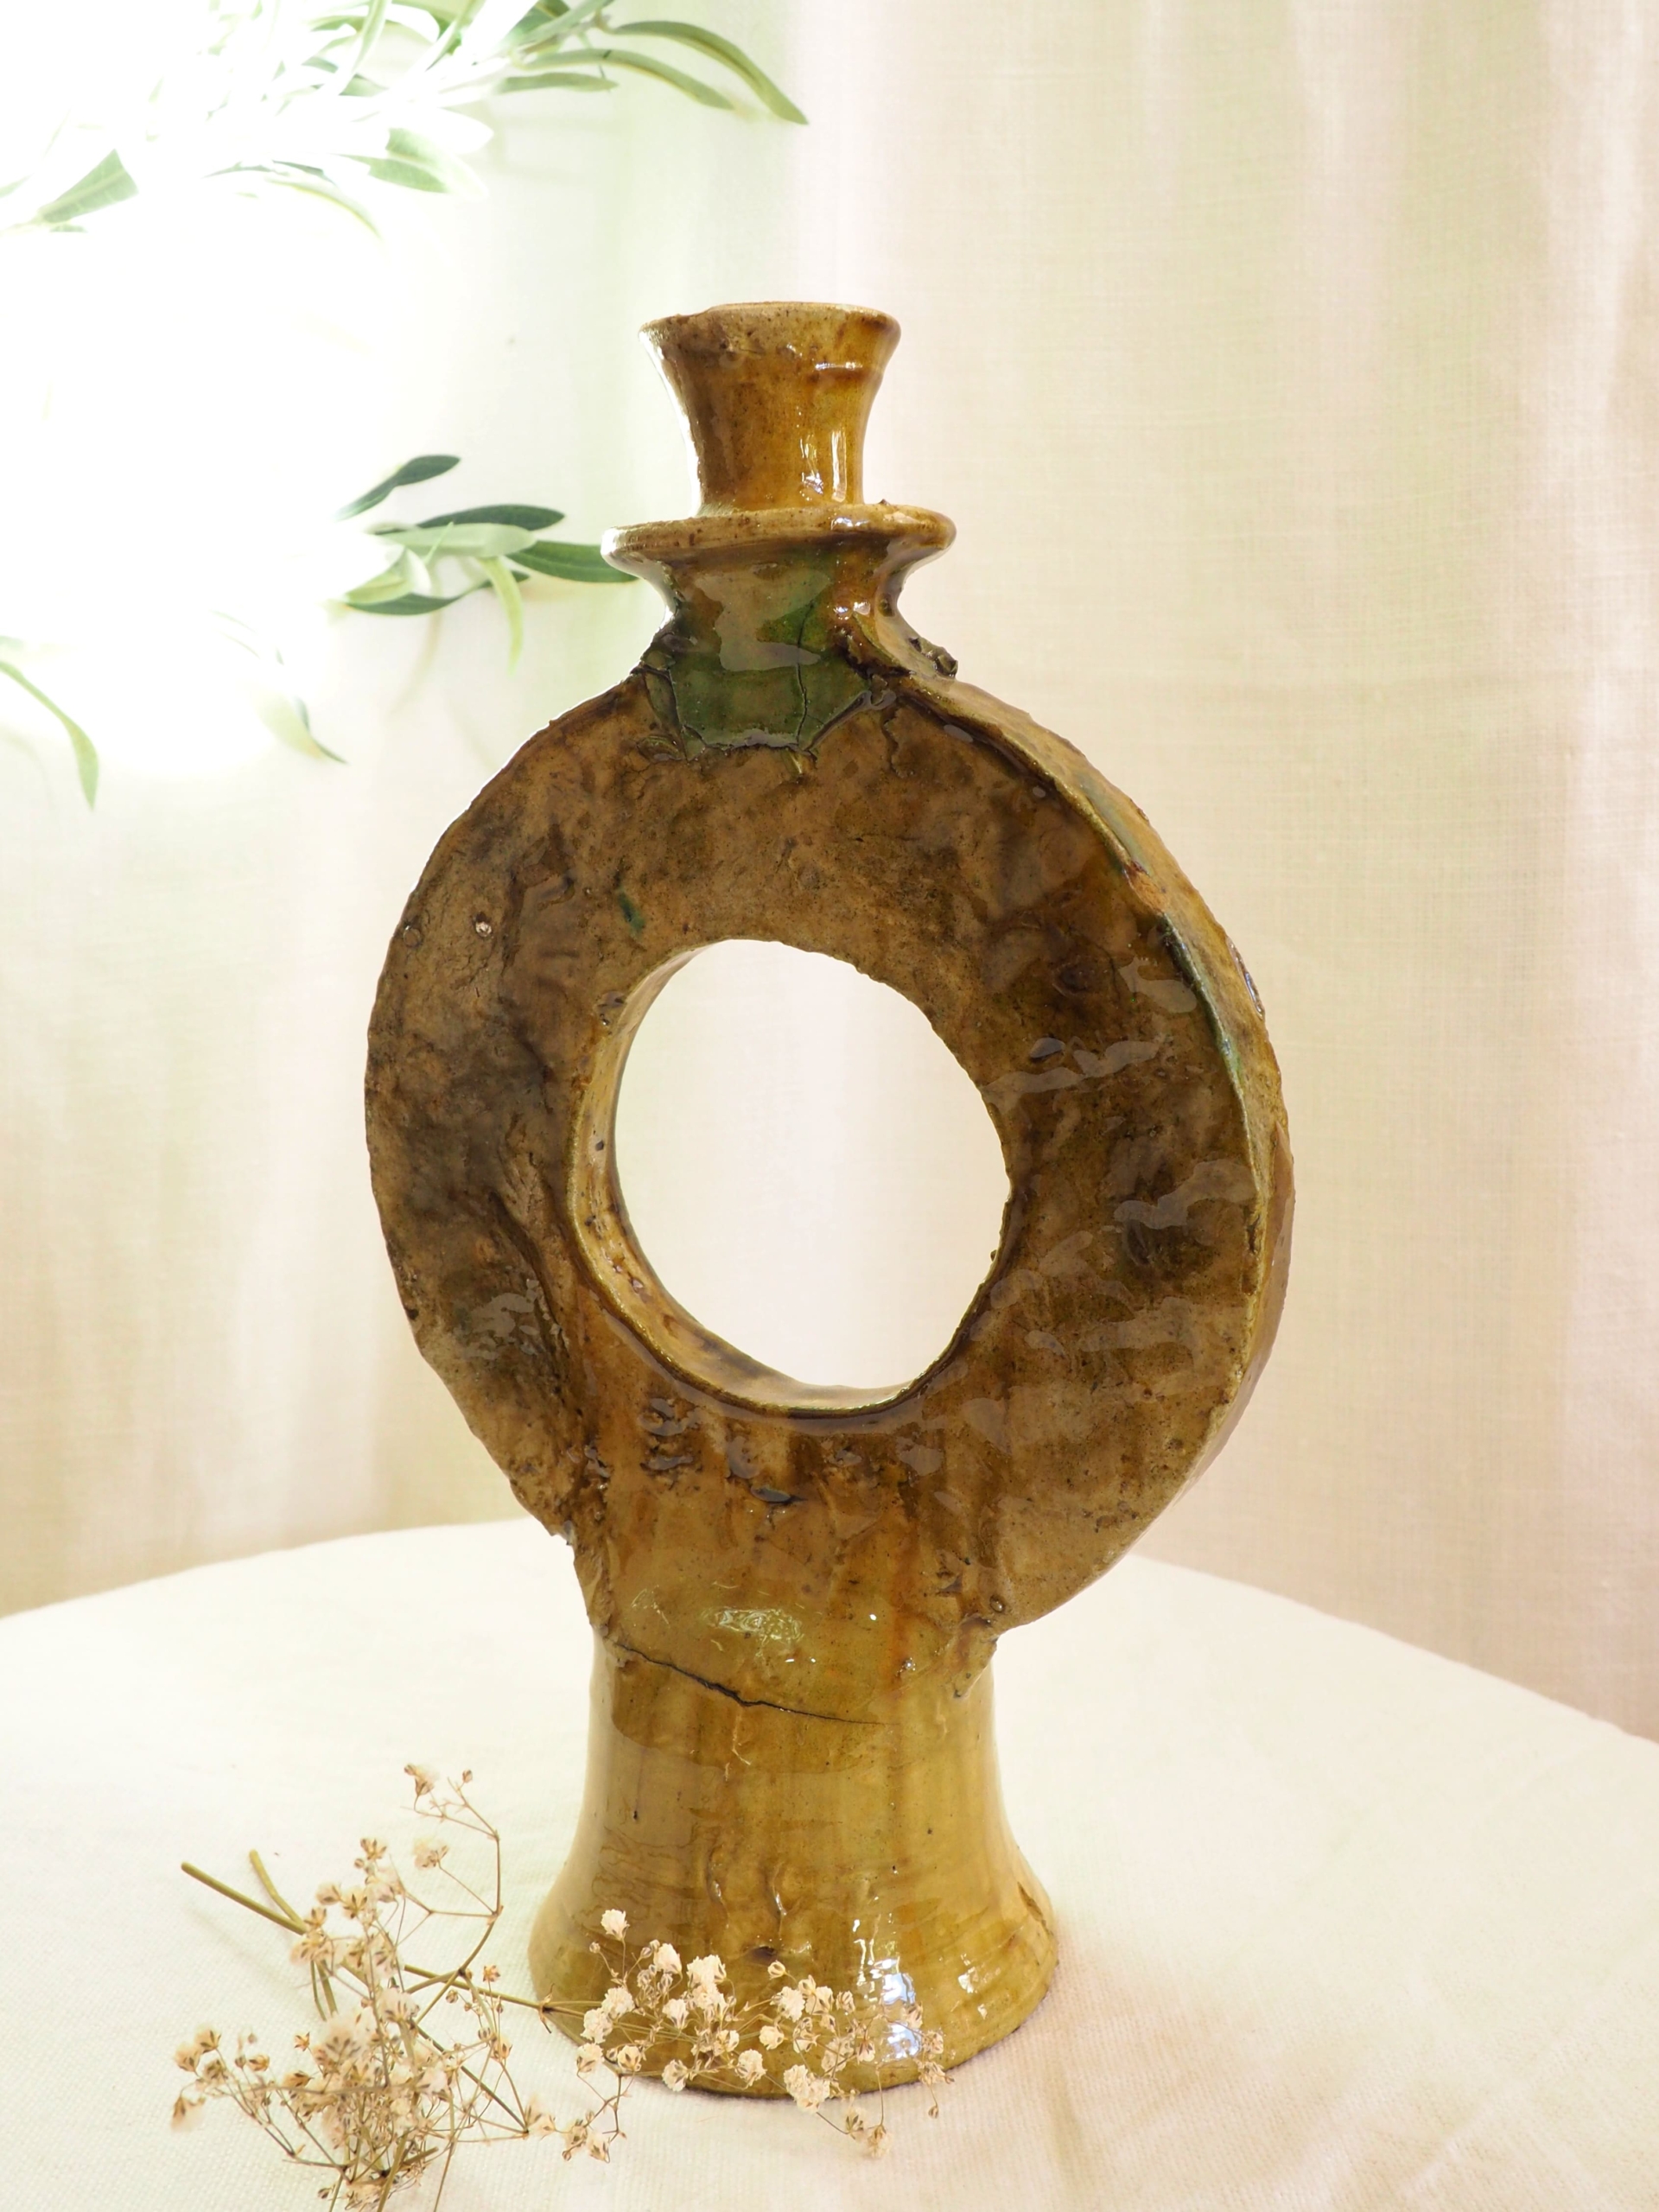 Bougeoir artisanal du Maroc de forme ronde, émaillé de couleur ocre